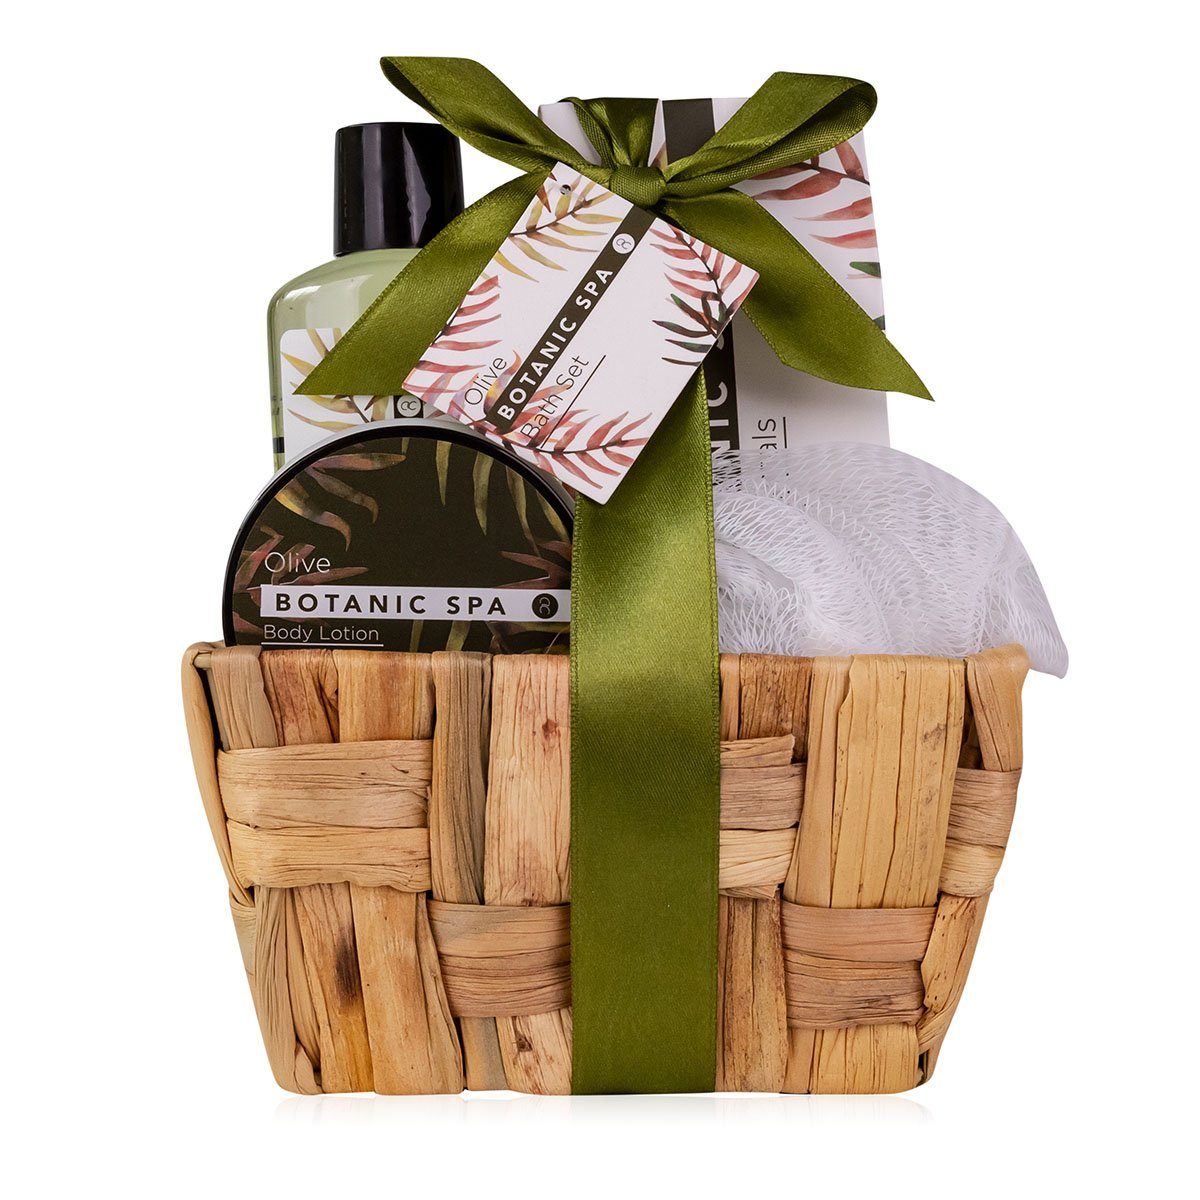 direktes ACCENTRA Pflege-Geschenkset Duft: verpackt Spa" für Seegras-Körbchen Olive, im Verschenken Geschenkset bereits "Olive